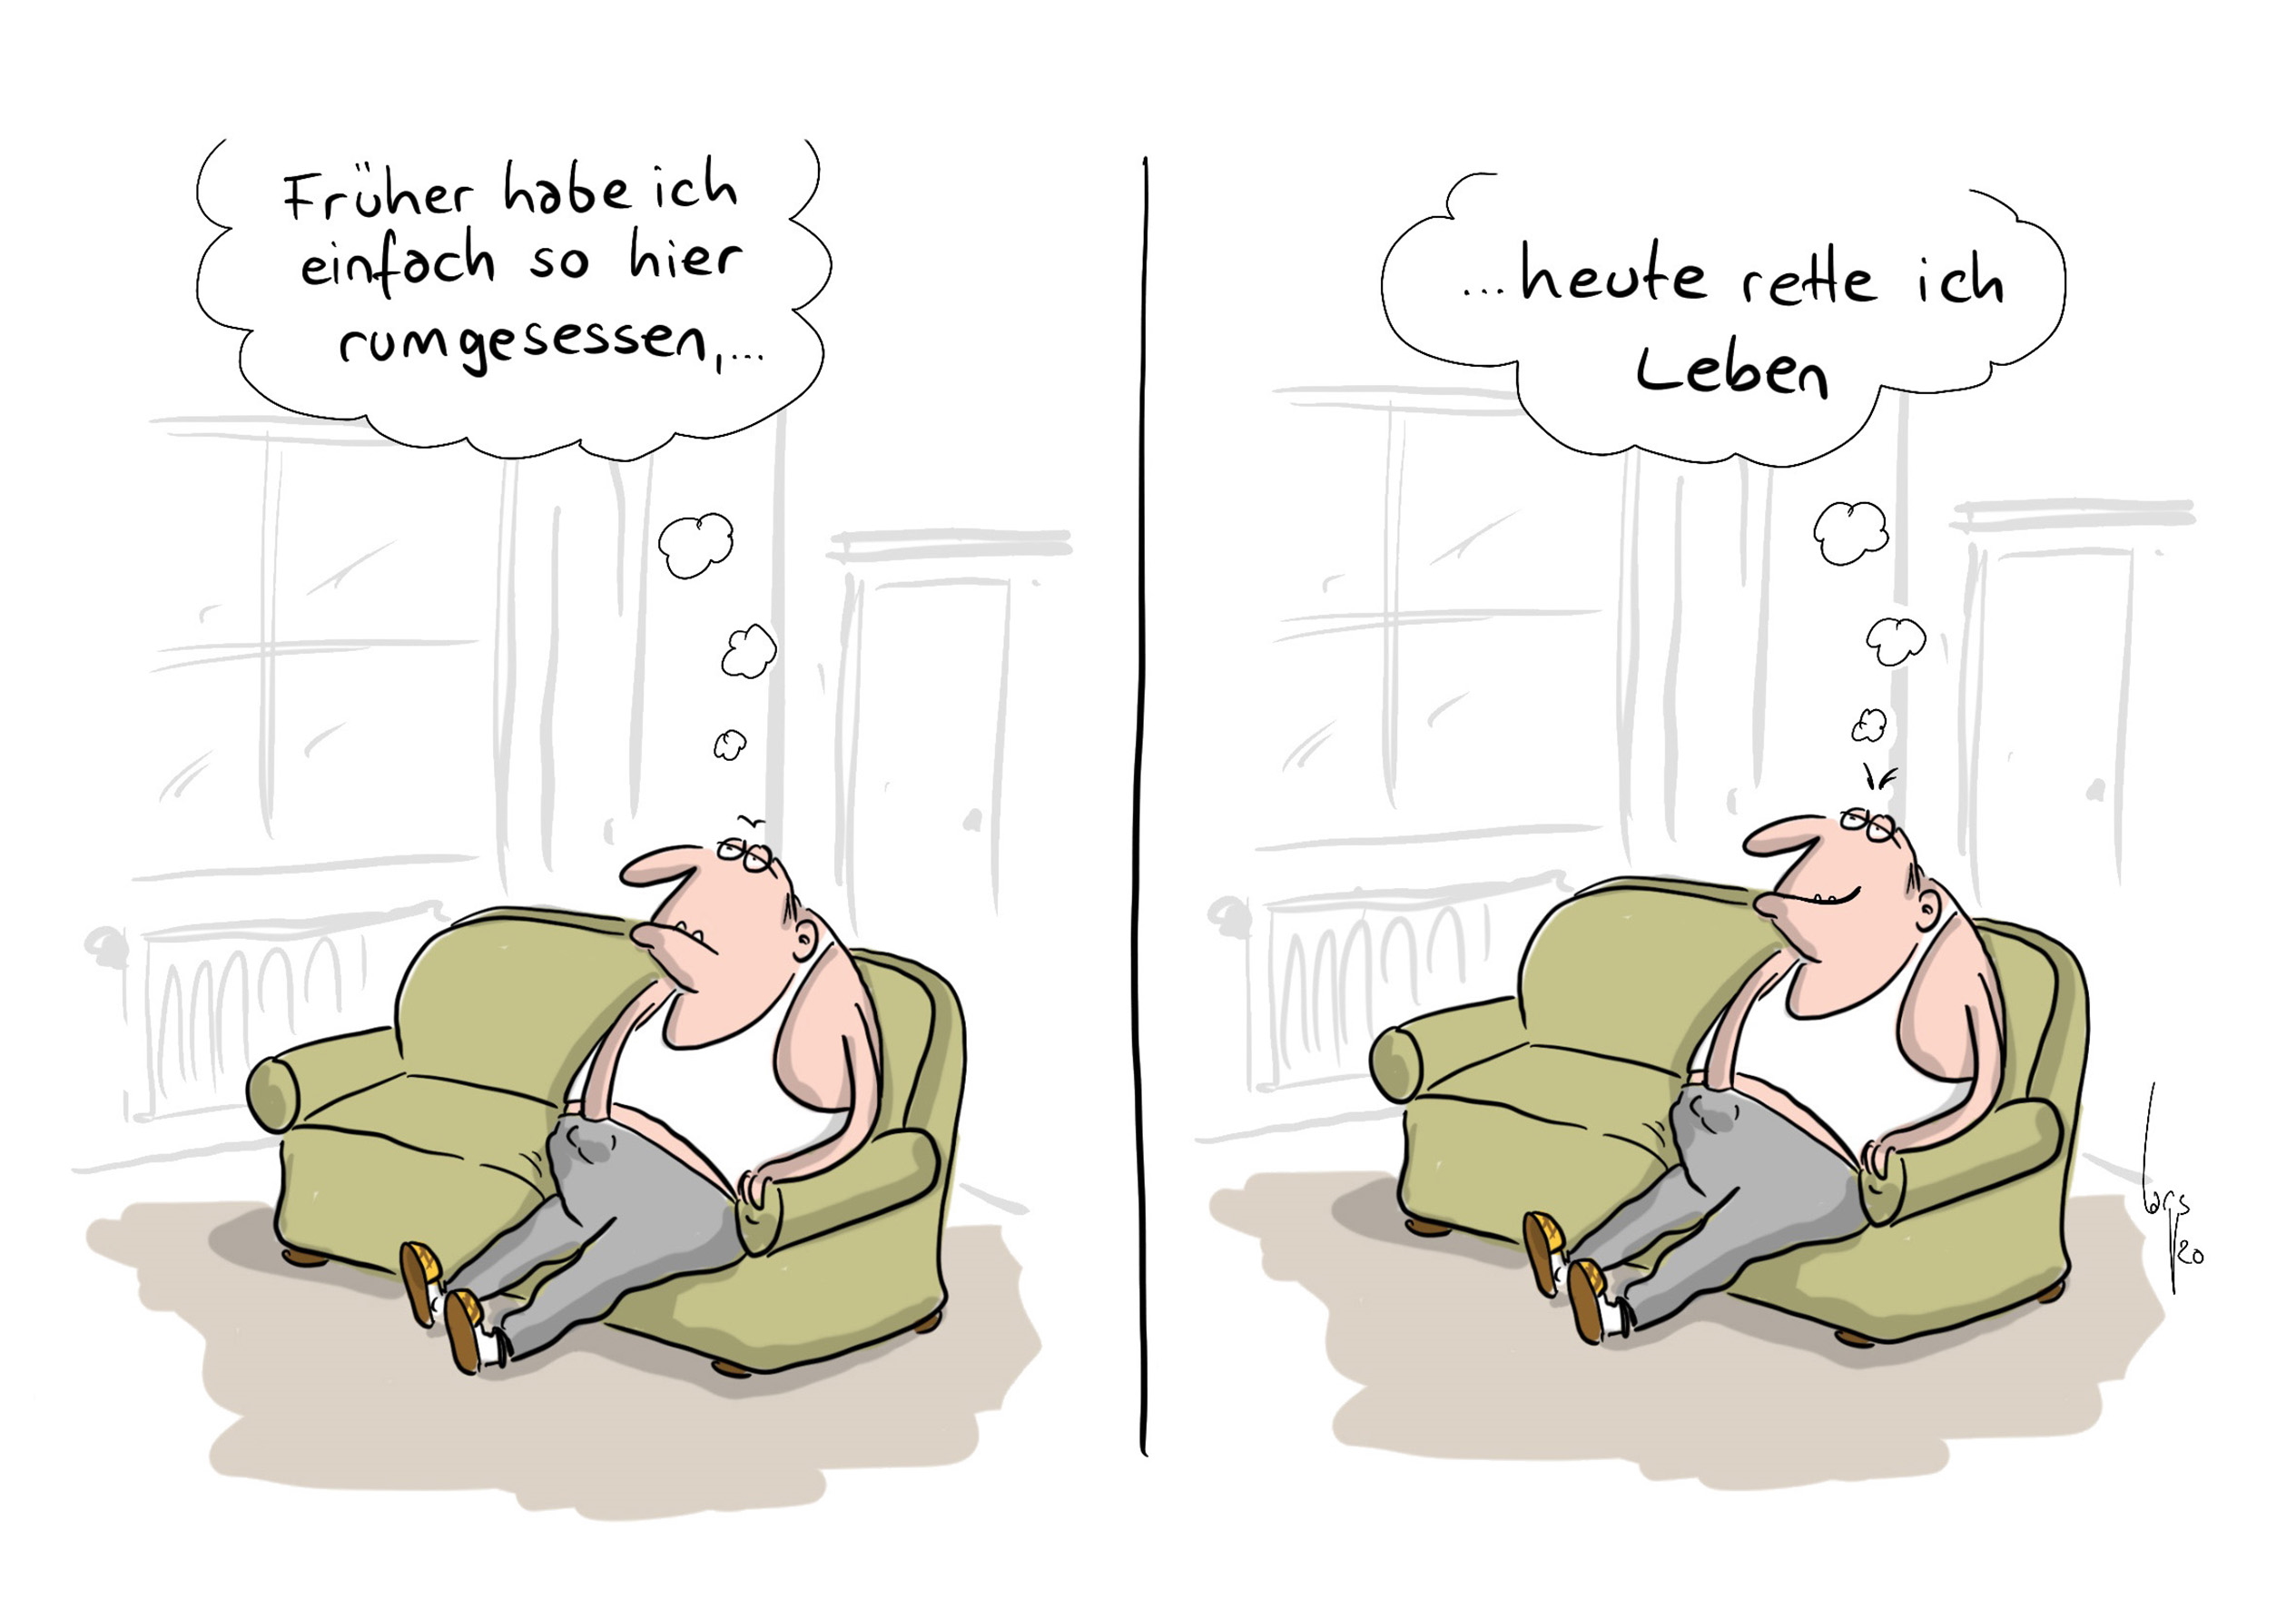 Karikaturenpreis der deutschen Zeitungen ausgeschrieben